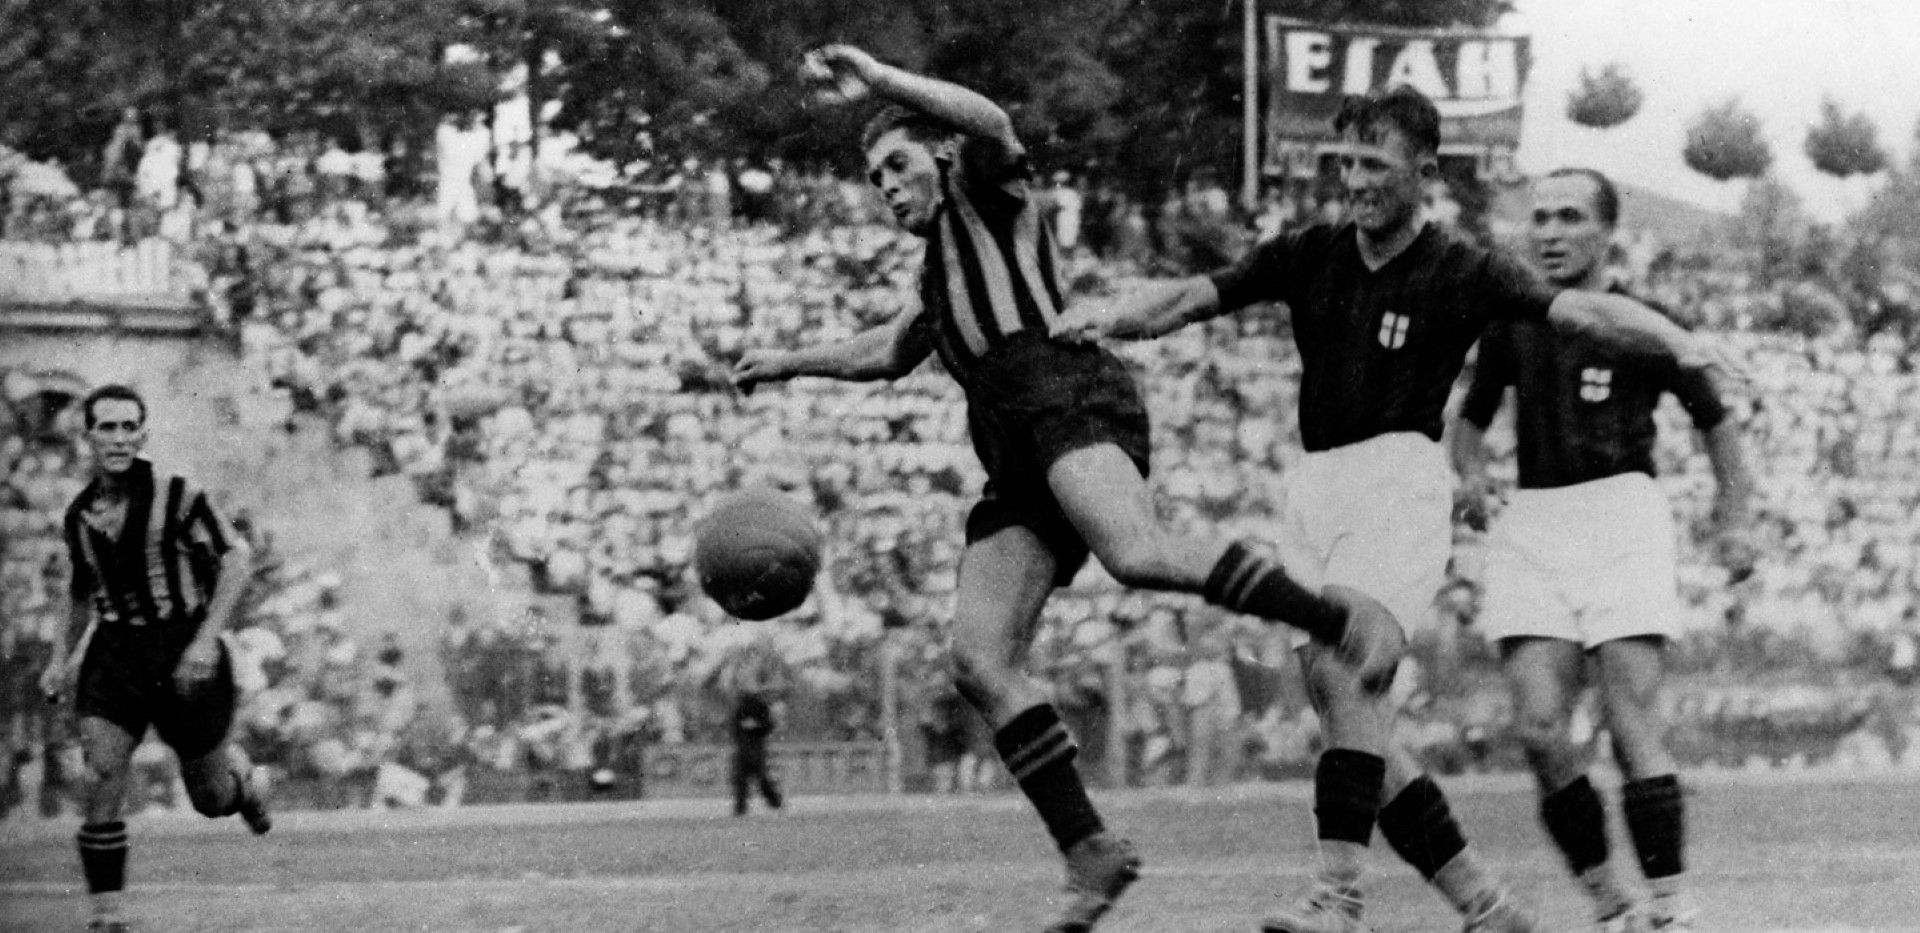 Джузепе Меаца, наричан Пепино. Любимецът на Милано, където се ражда през 1910 г. Дебютира на 17 за "Интер", през 1940-а отива в "Милан", а оттам преминава в "Ювентус" два сезона по-късно. Връща се в "Интер" след Втората световна война и завършва кариерата си там през 1947 г. Три пъти е шампион с любимия си отбор, три пъти е и голмайстор на първенството. И още толкова пъти става треньор на "синьо-черните". Отиде си от света през 1979 г., но името му е завинаги в историята - стадионът в Милано, видял всичко във футбола, носи името му.